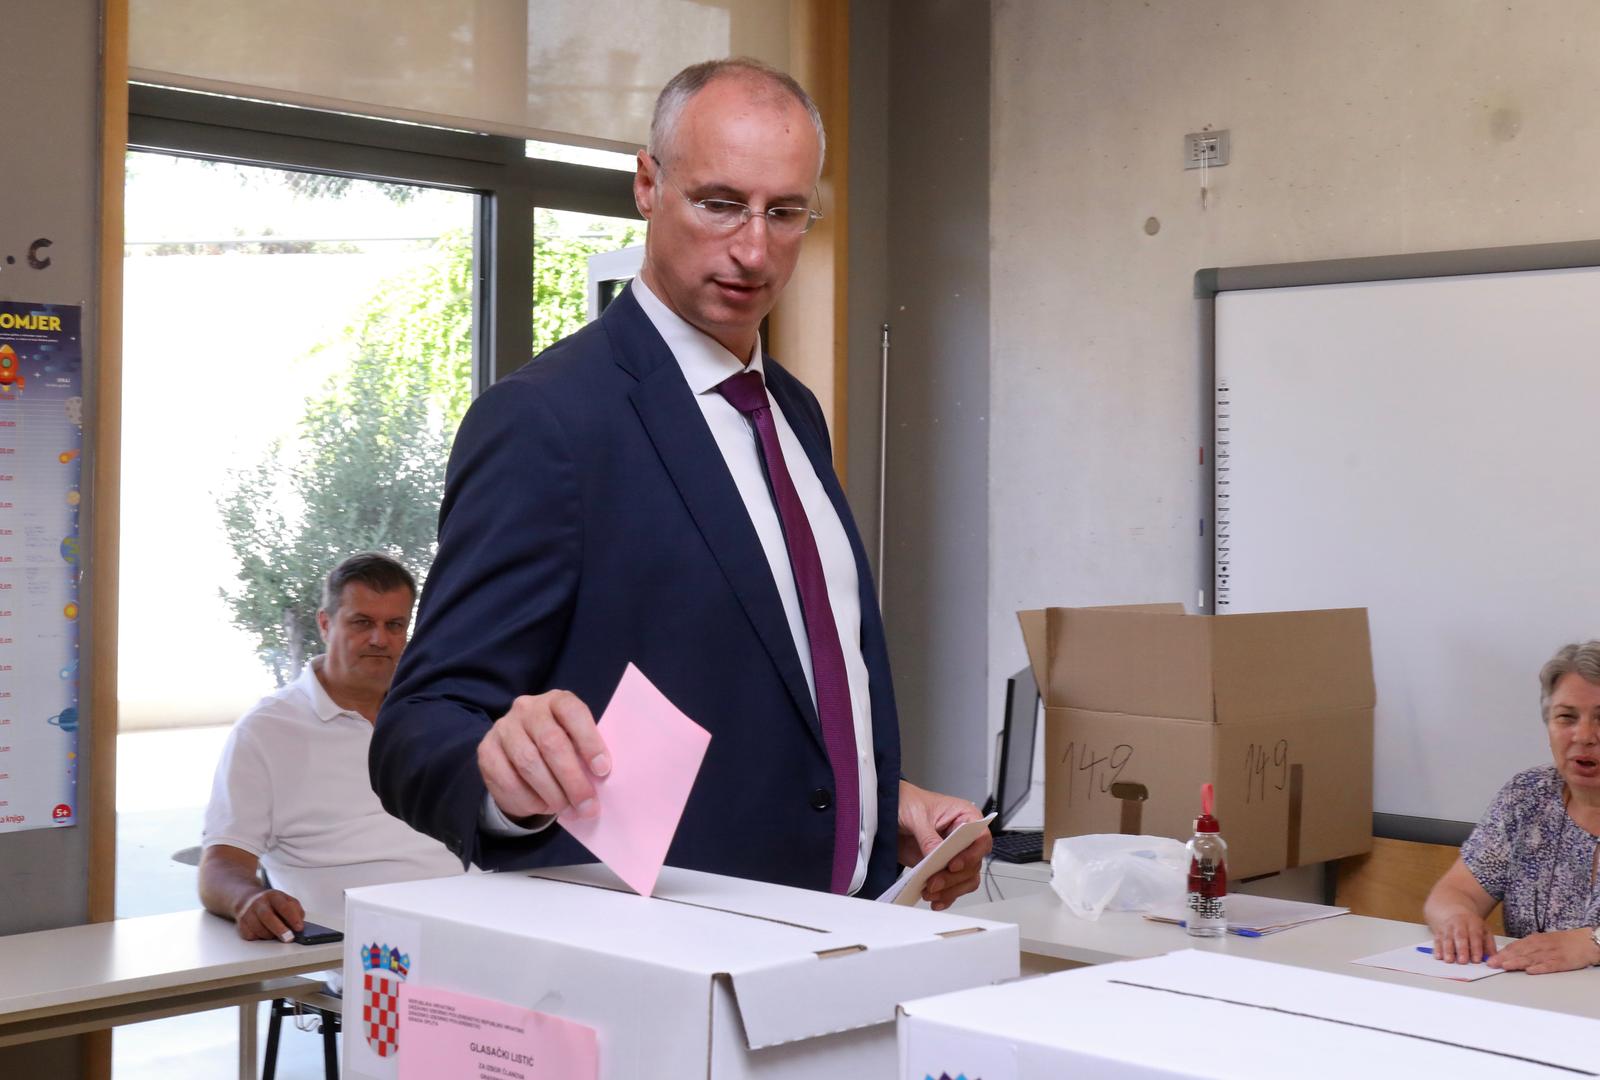 26.06.2022., Split - Kandidat Centra za gradonacelnika Splita Ivica Puljak glasovao je na prijevremenim lokalnim izborima. Photo: Ivo Cagalj/PIXSELL